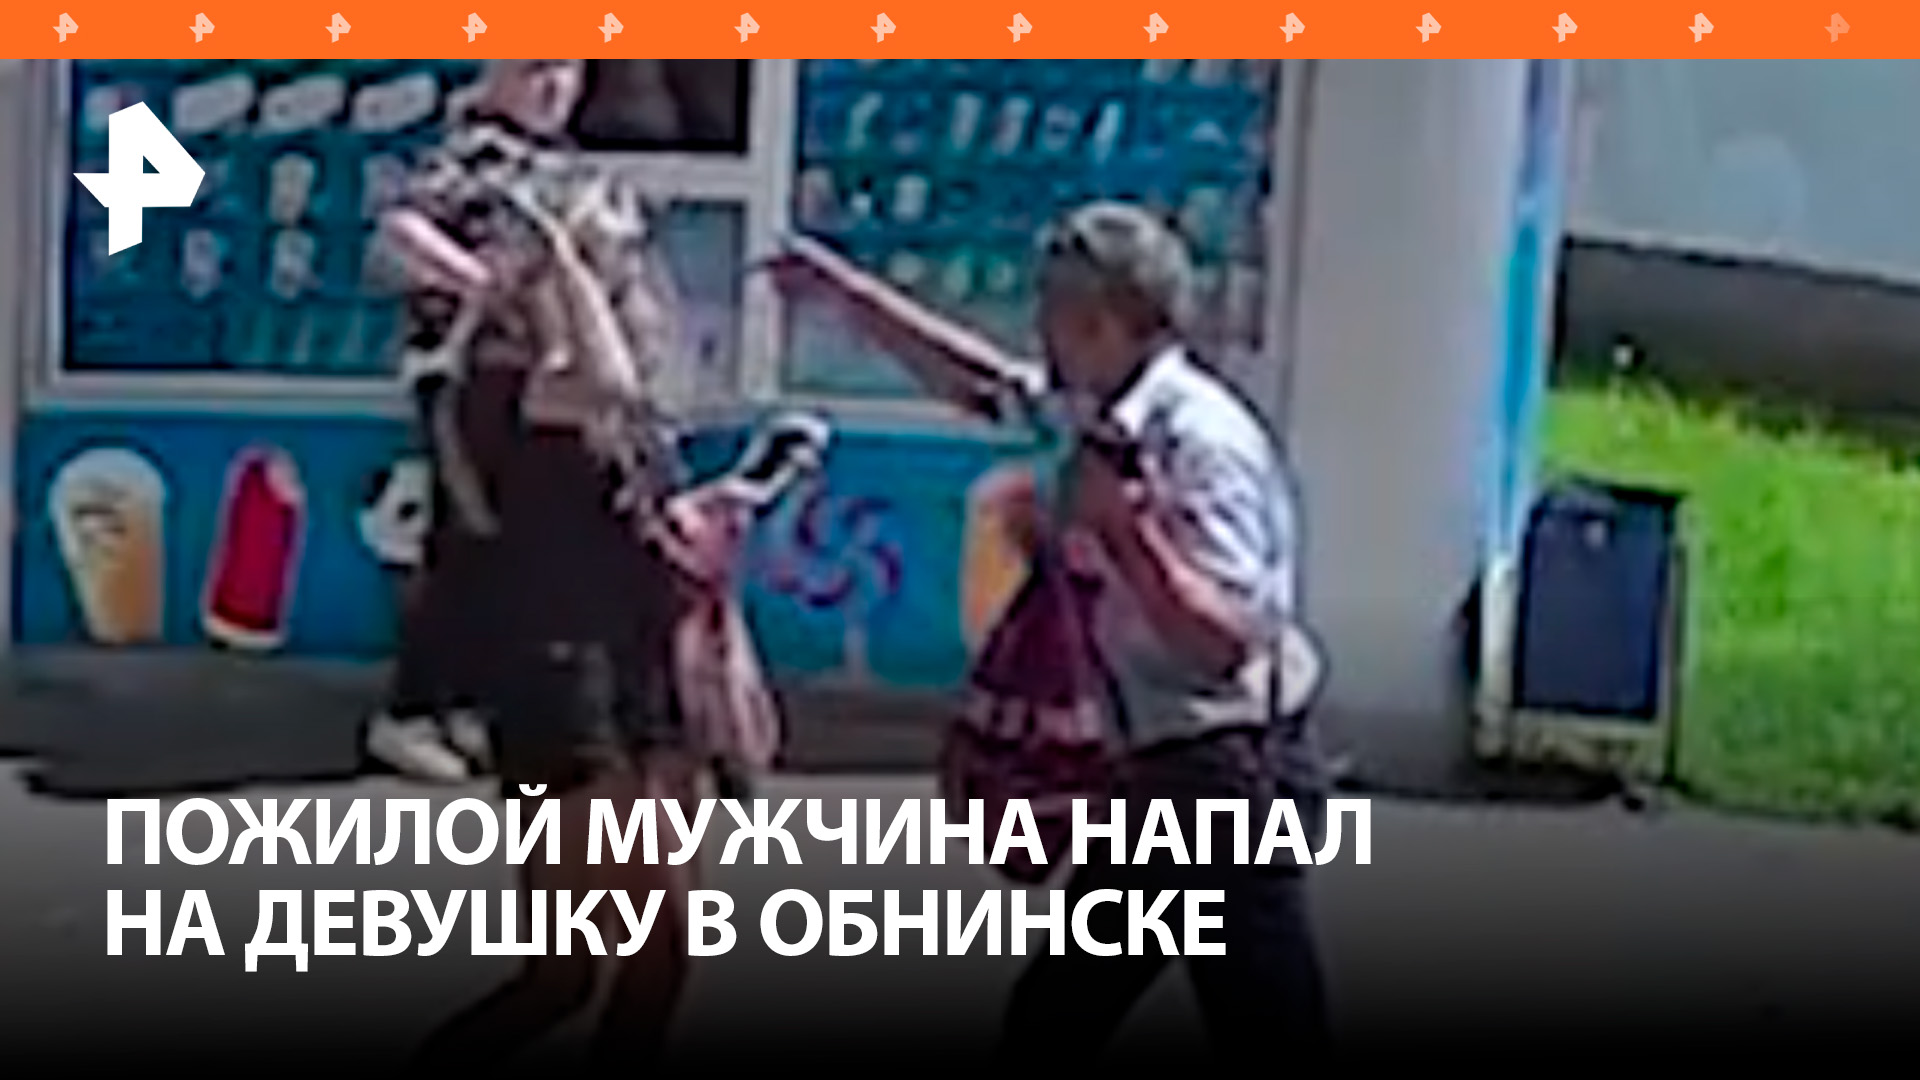 Криминальный шлепок: после уличного конфликта с девушкой в Обнинске мужчина попал в отделение / РЕН